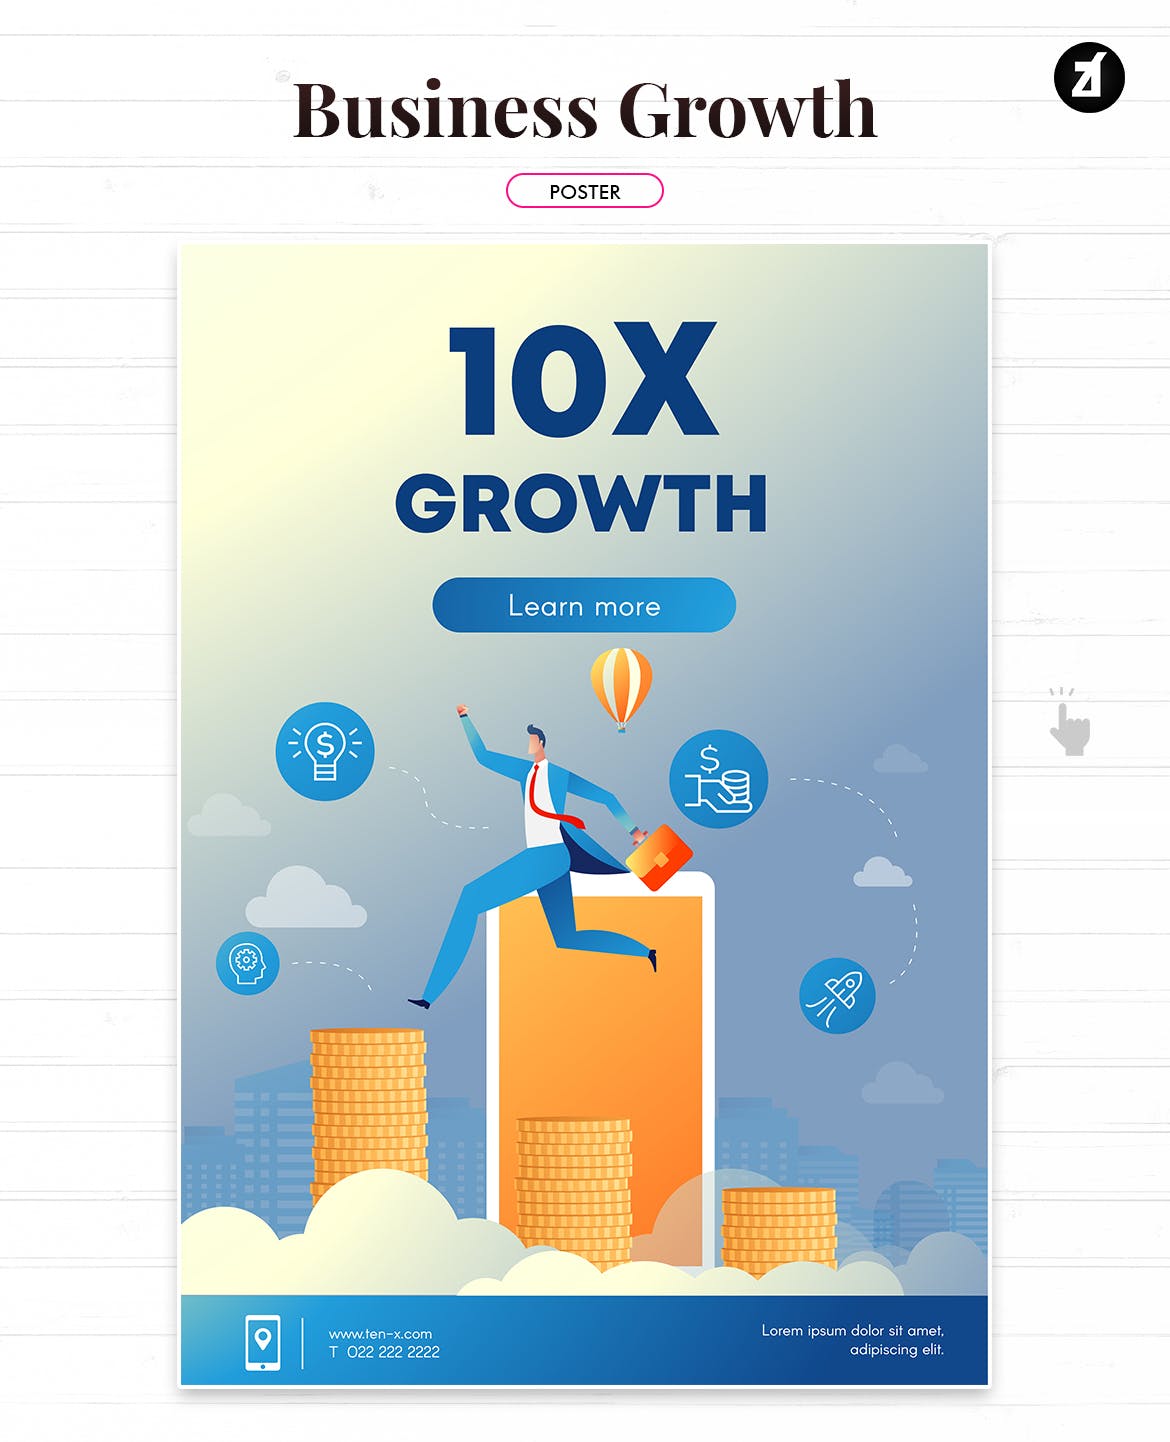 业务增长企业主题矢量插画素材 Business growth illustration with text layout插图(1)